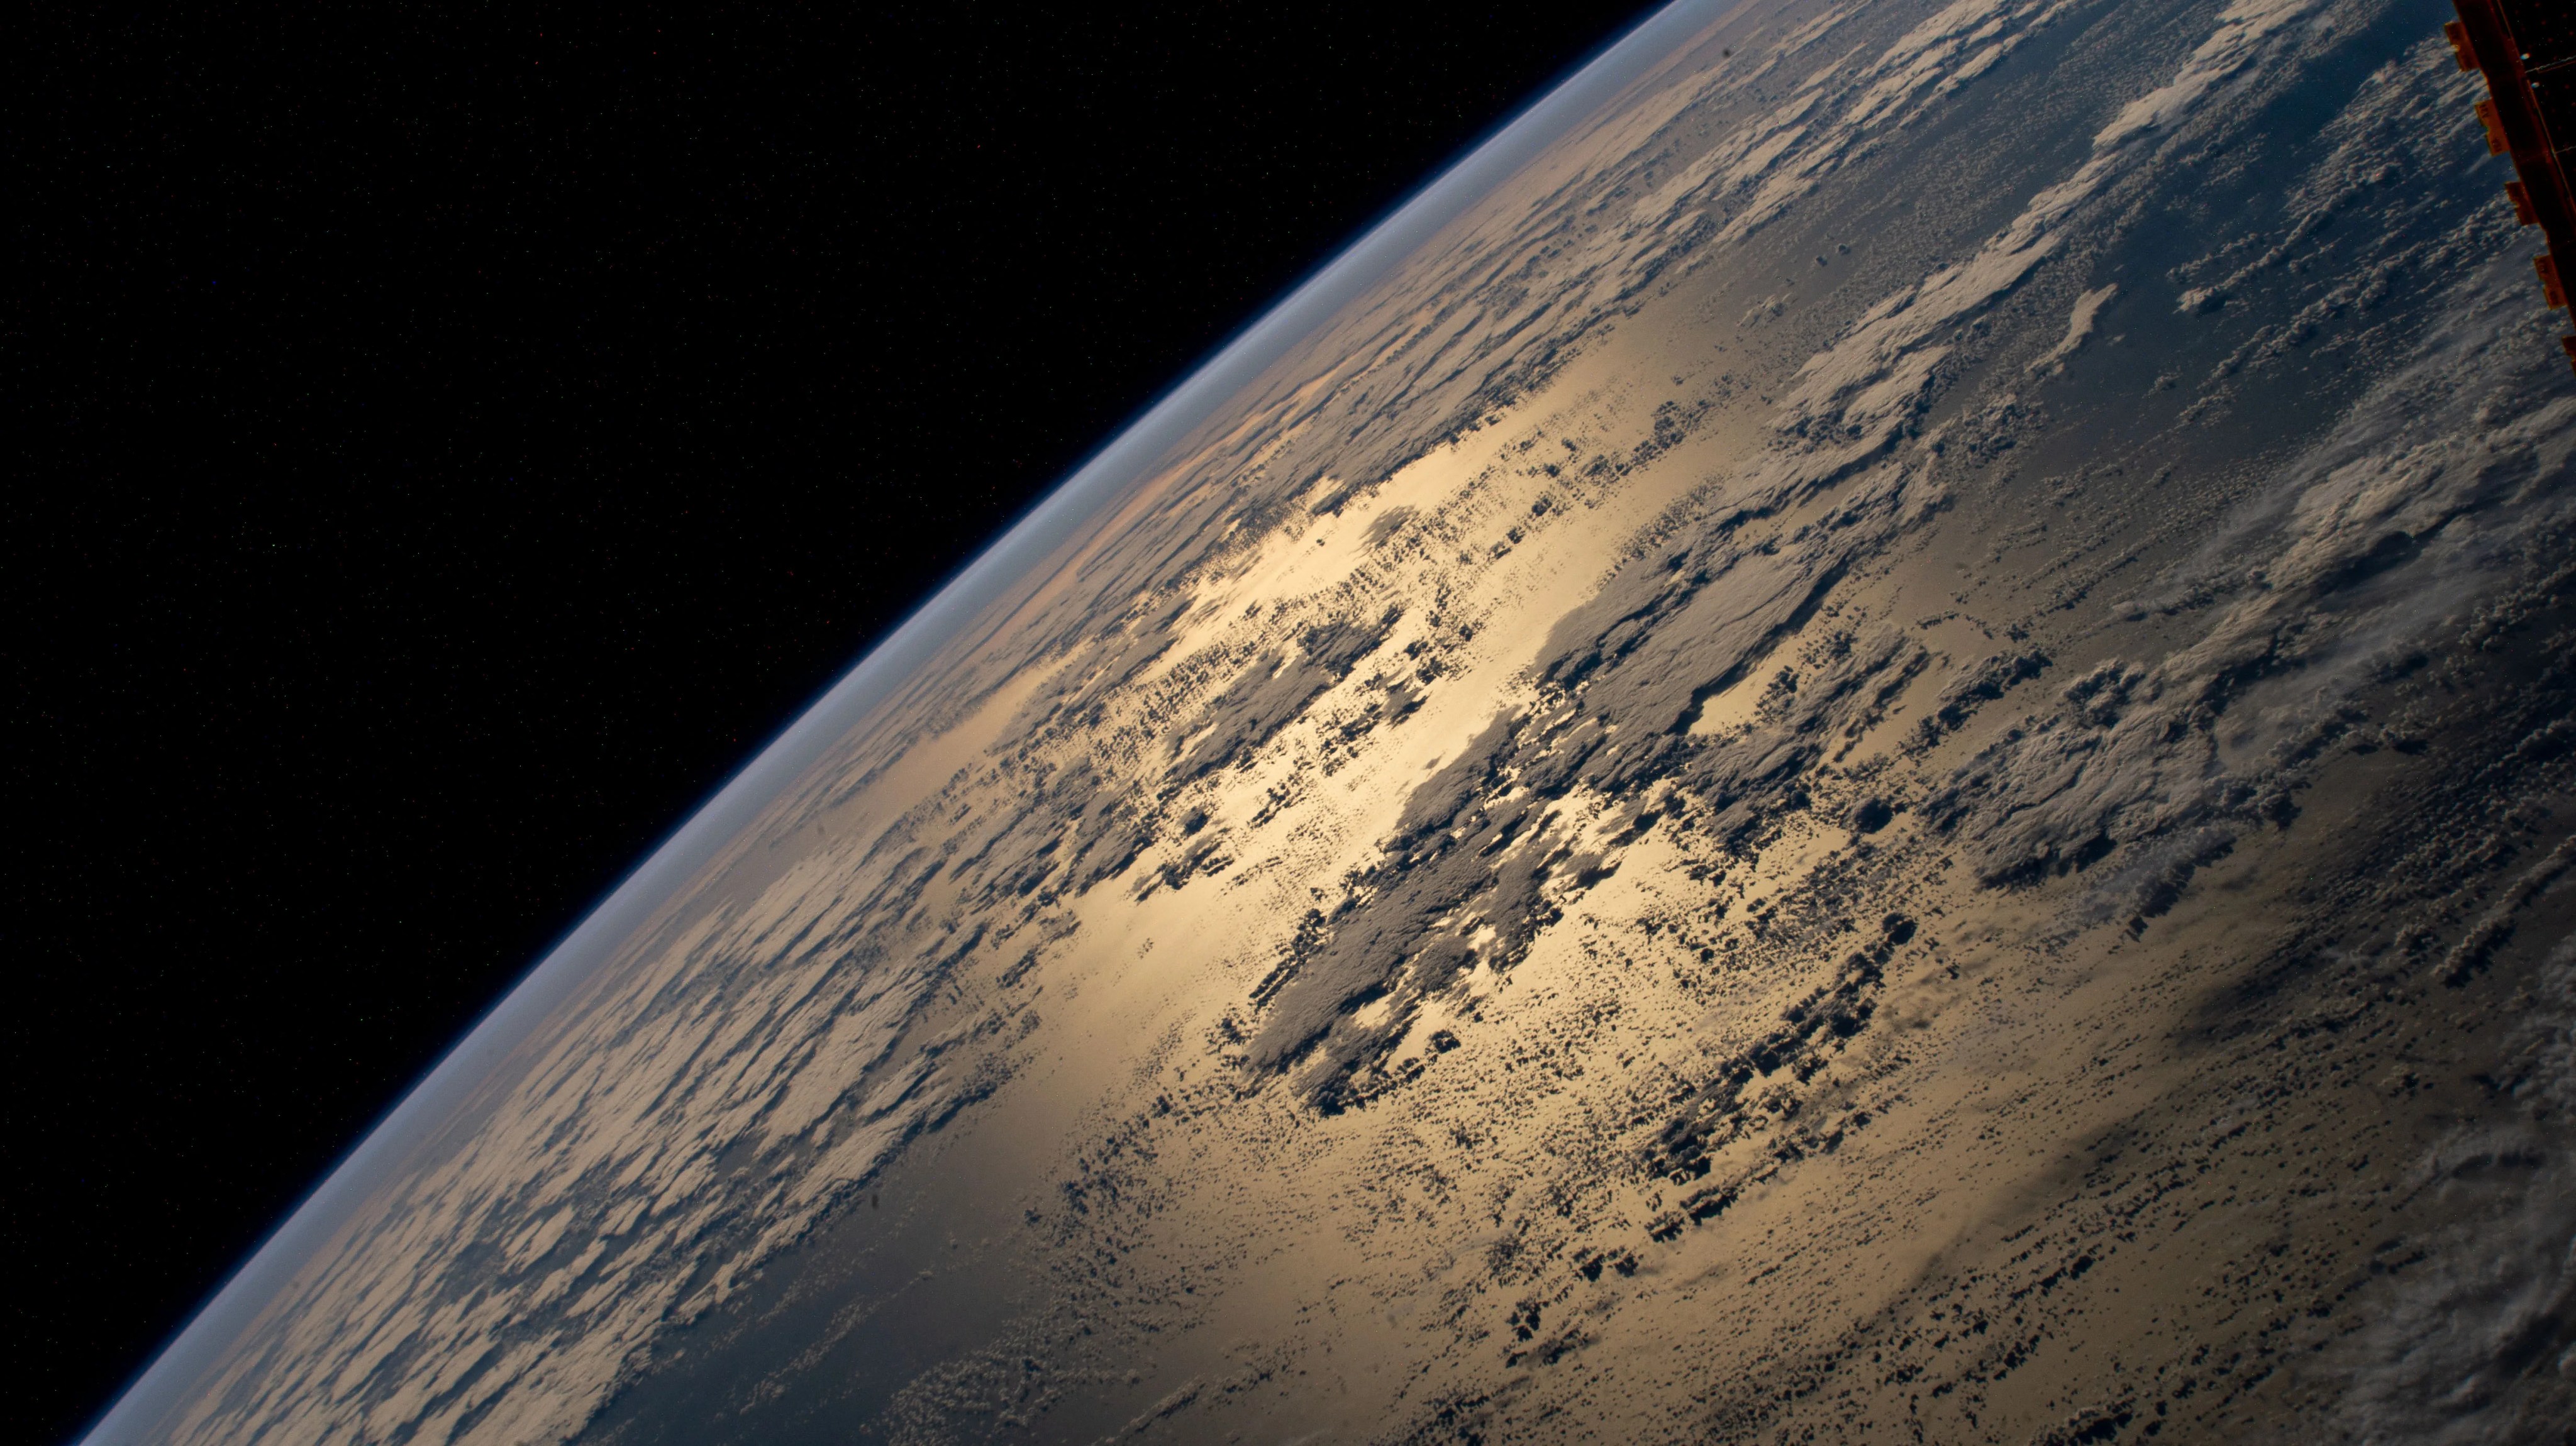 Imagen de la Tierra vista desde la Estación Espacial Internacional. La luz solar se refleja en el océano Atlántico. La Tierra, que ocupa tres cuartas partes de cuadro, muestra una capa de nubes rodeando un área donde se puede ver reflejada la luz solar en el océano.